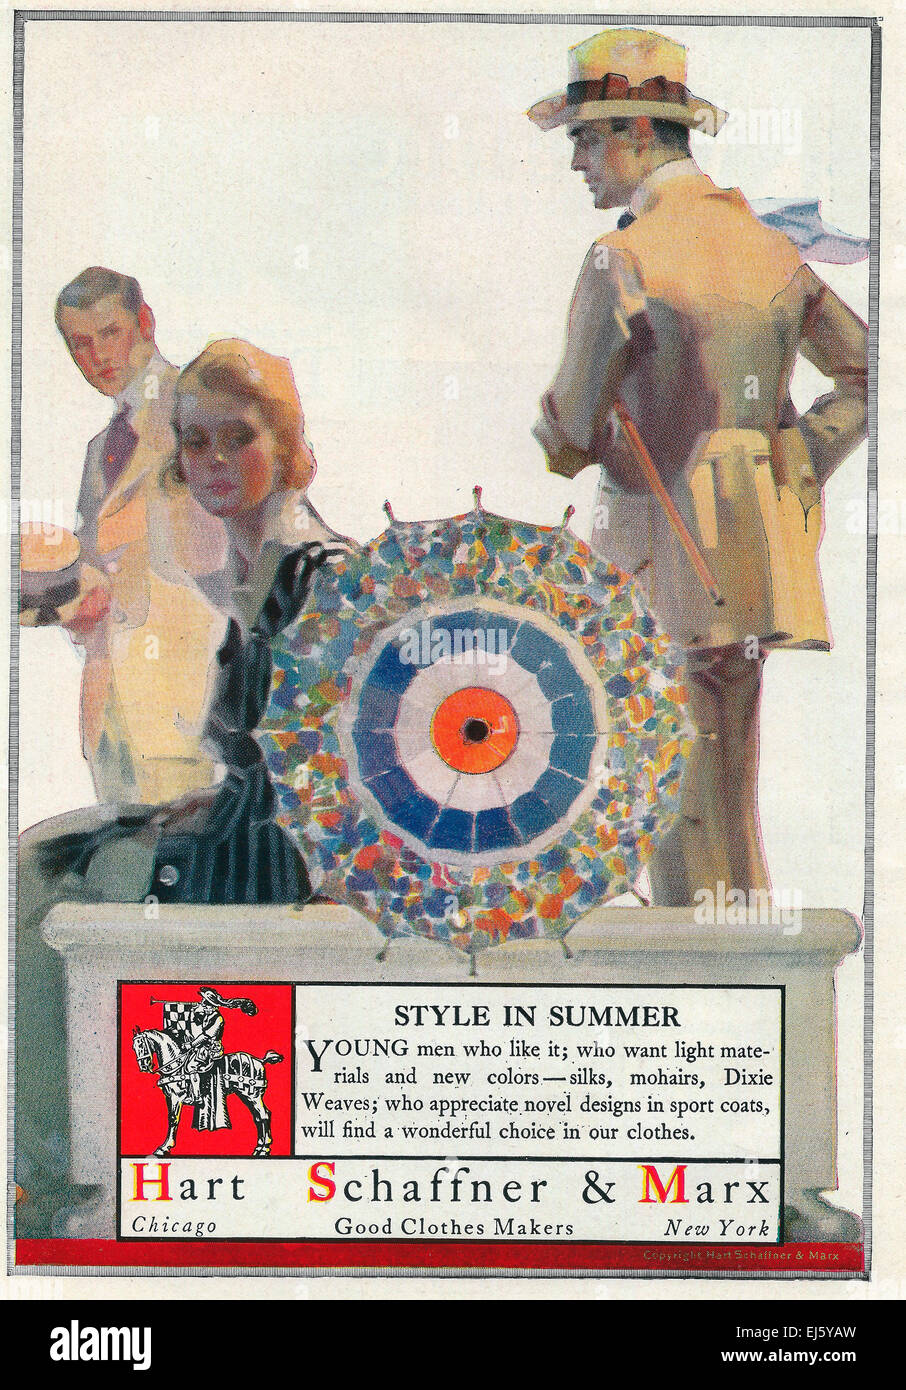 Hart Schaffner & Marx - vestiti buoni Maker - 1916 Annuncio Foto Stock